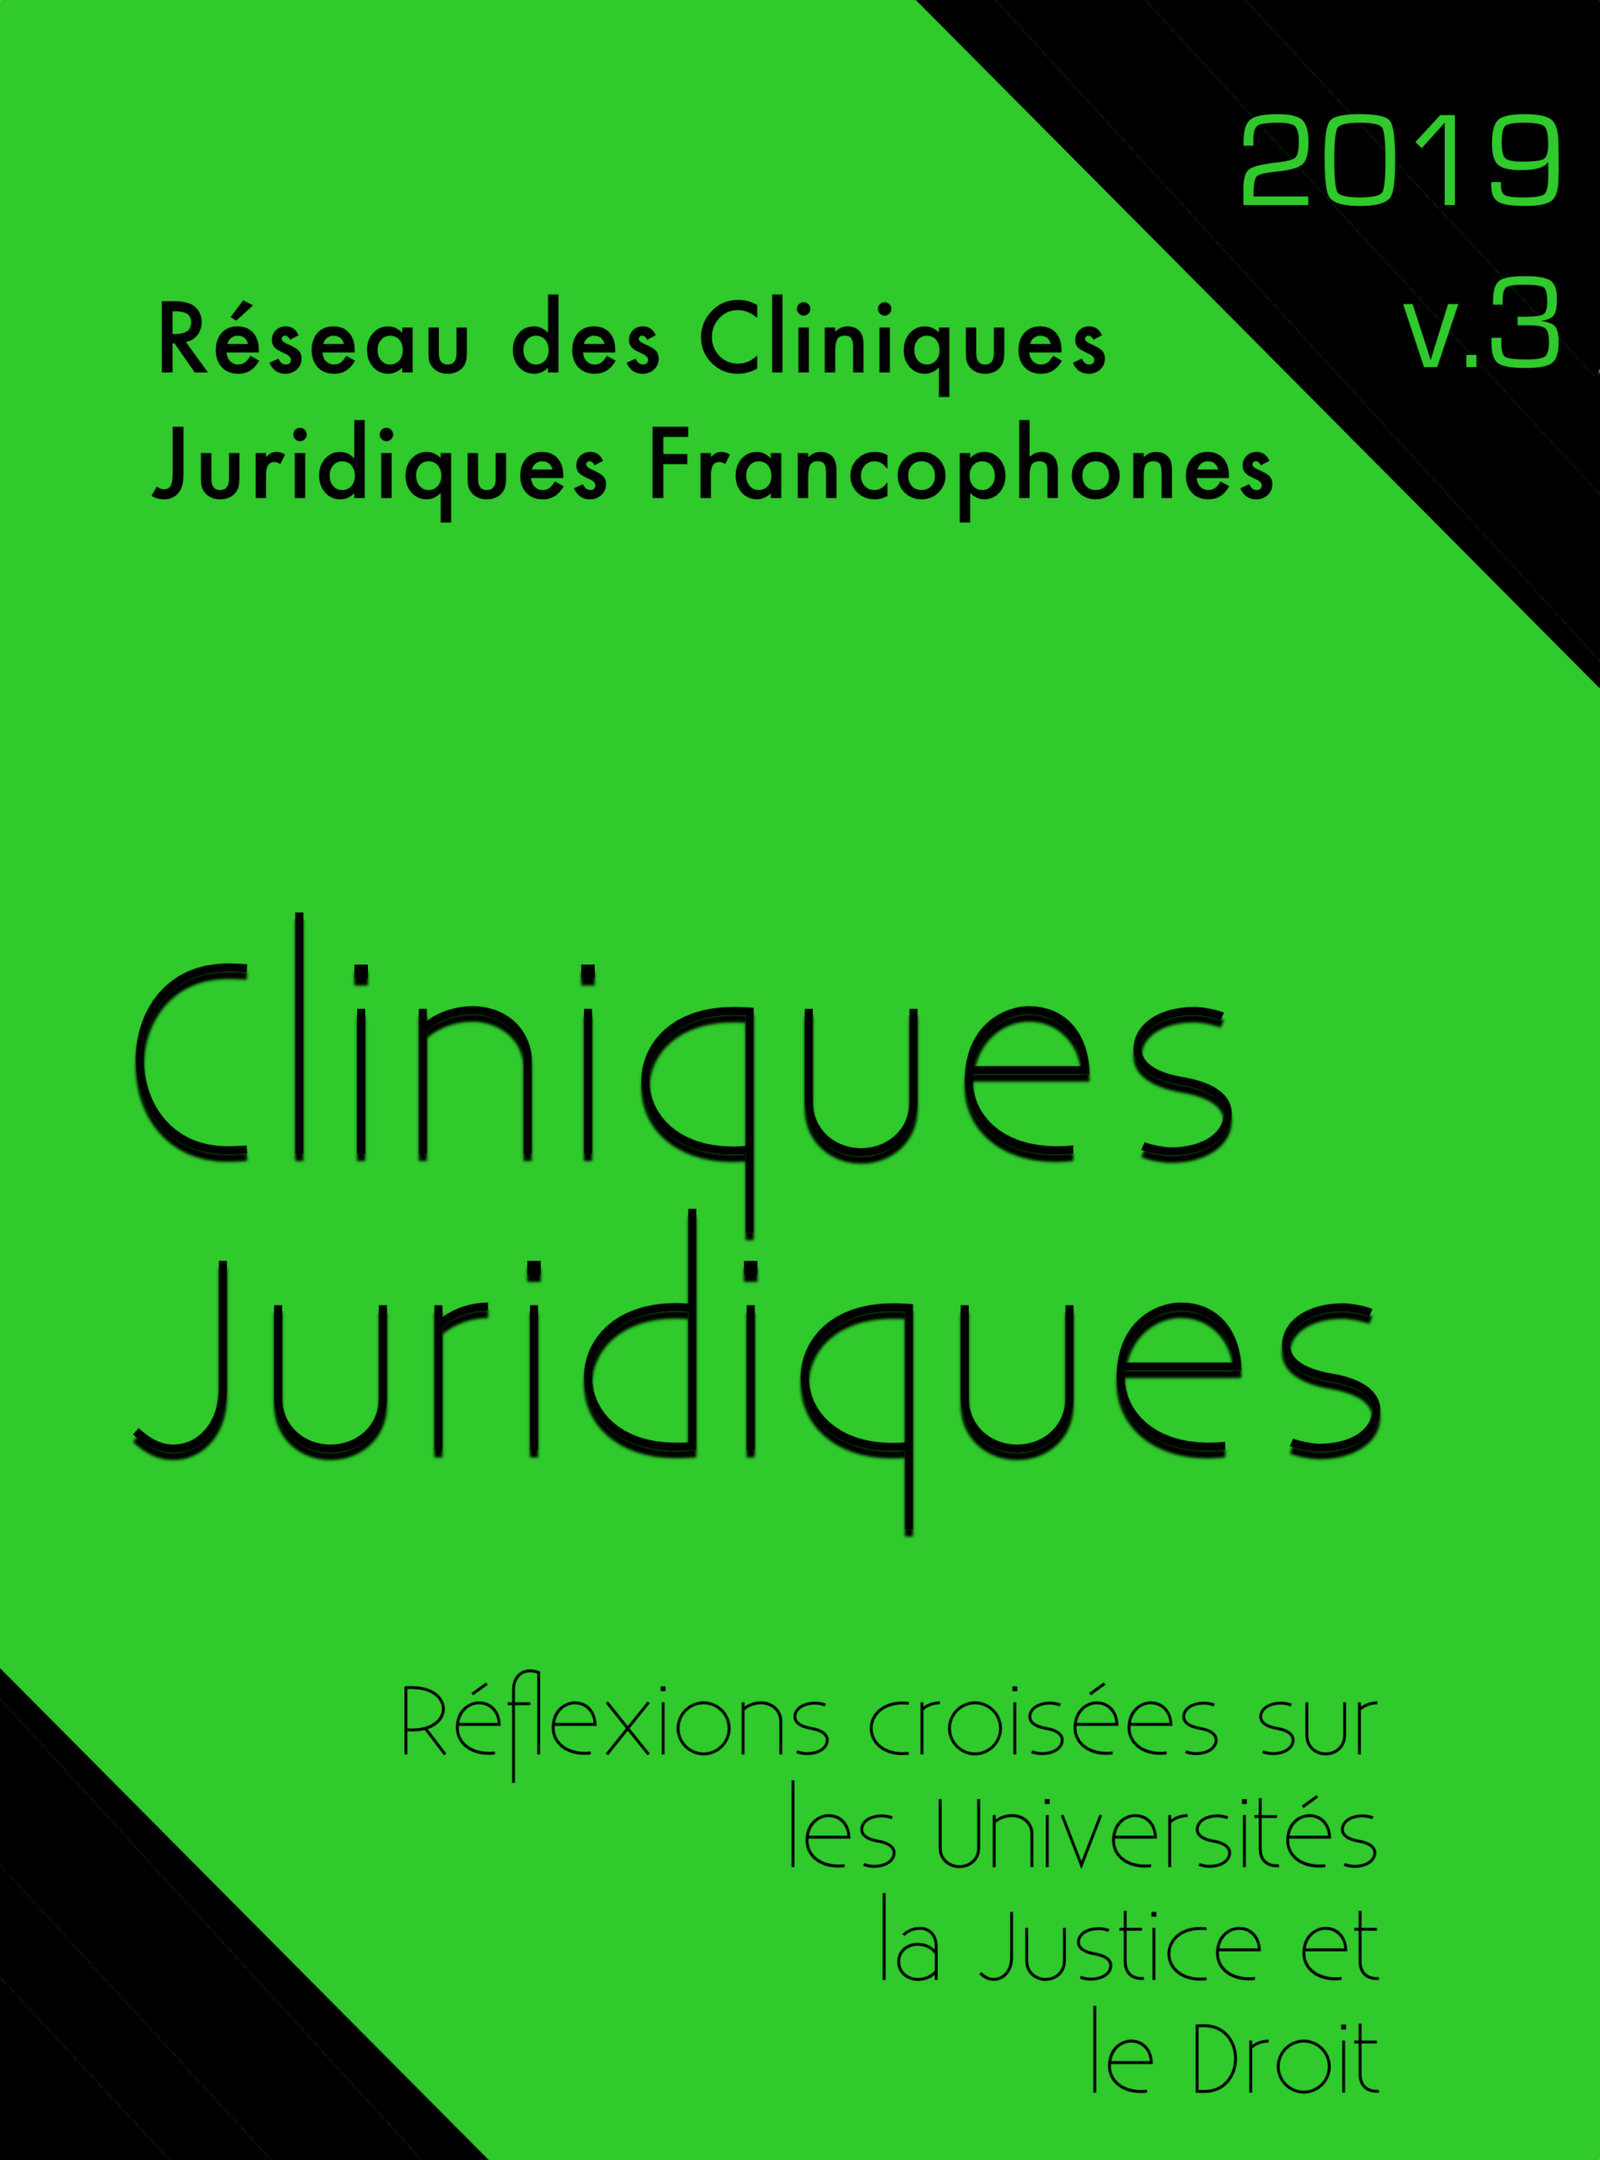 L'introduction des cliniques juridiques universitaires dans le paysage  juridique français – Réseau des Cliniques Juridiques Francophones